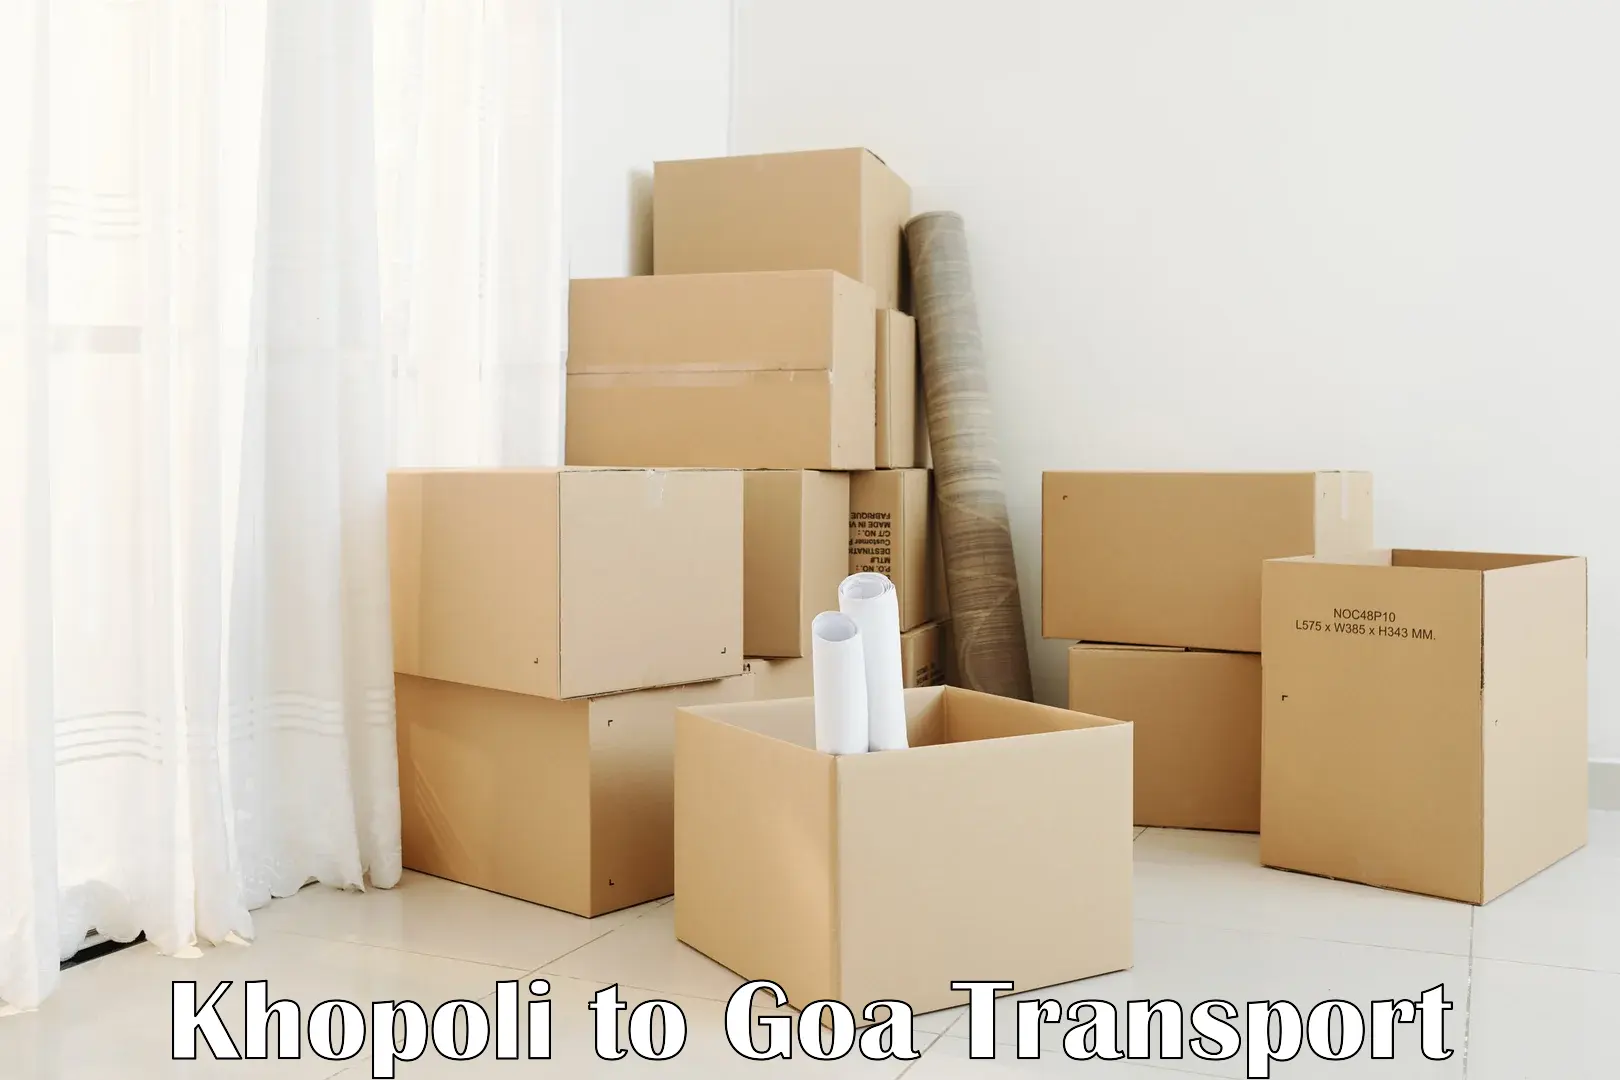 Daily transport service Khopoli to Mormugao Port